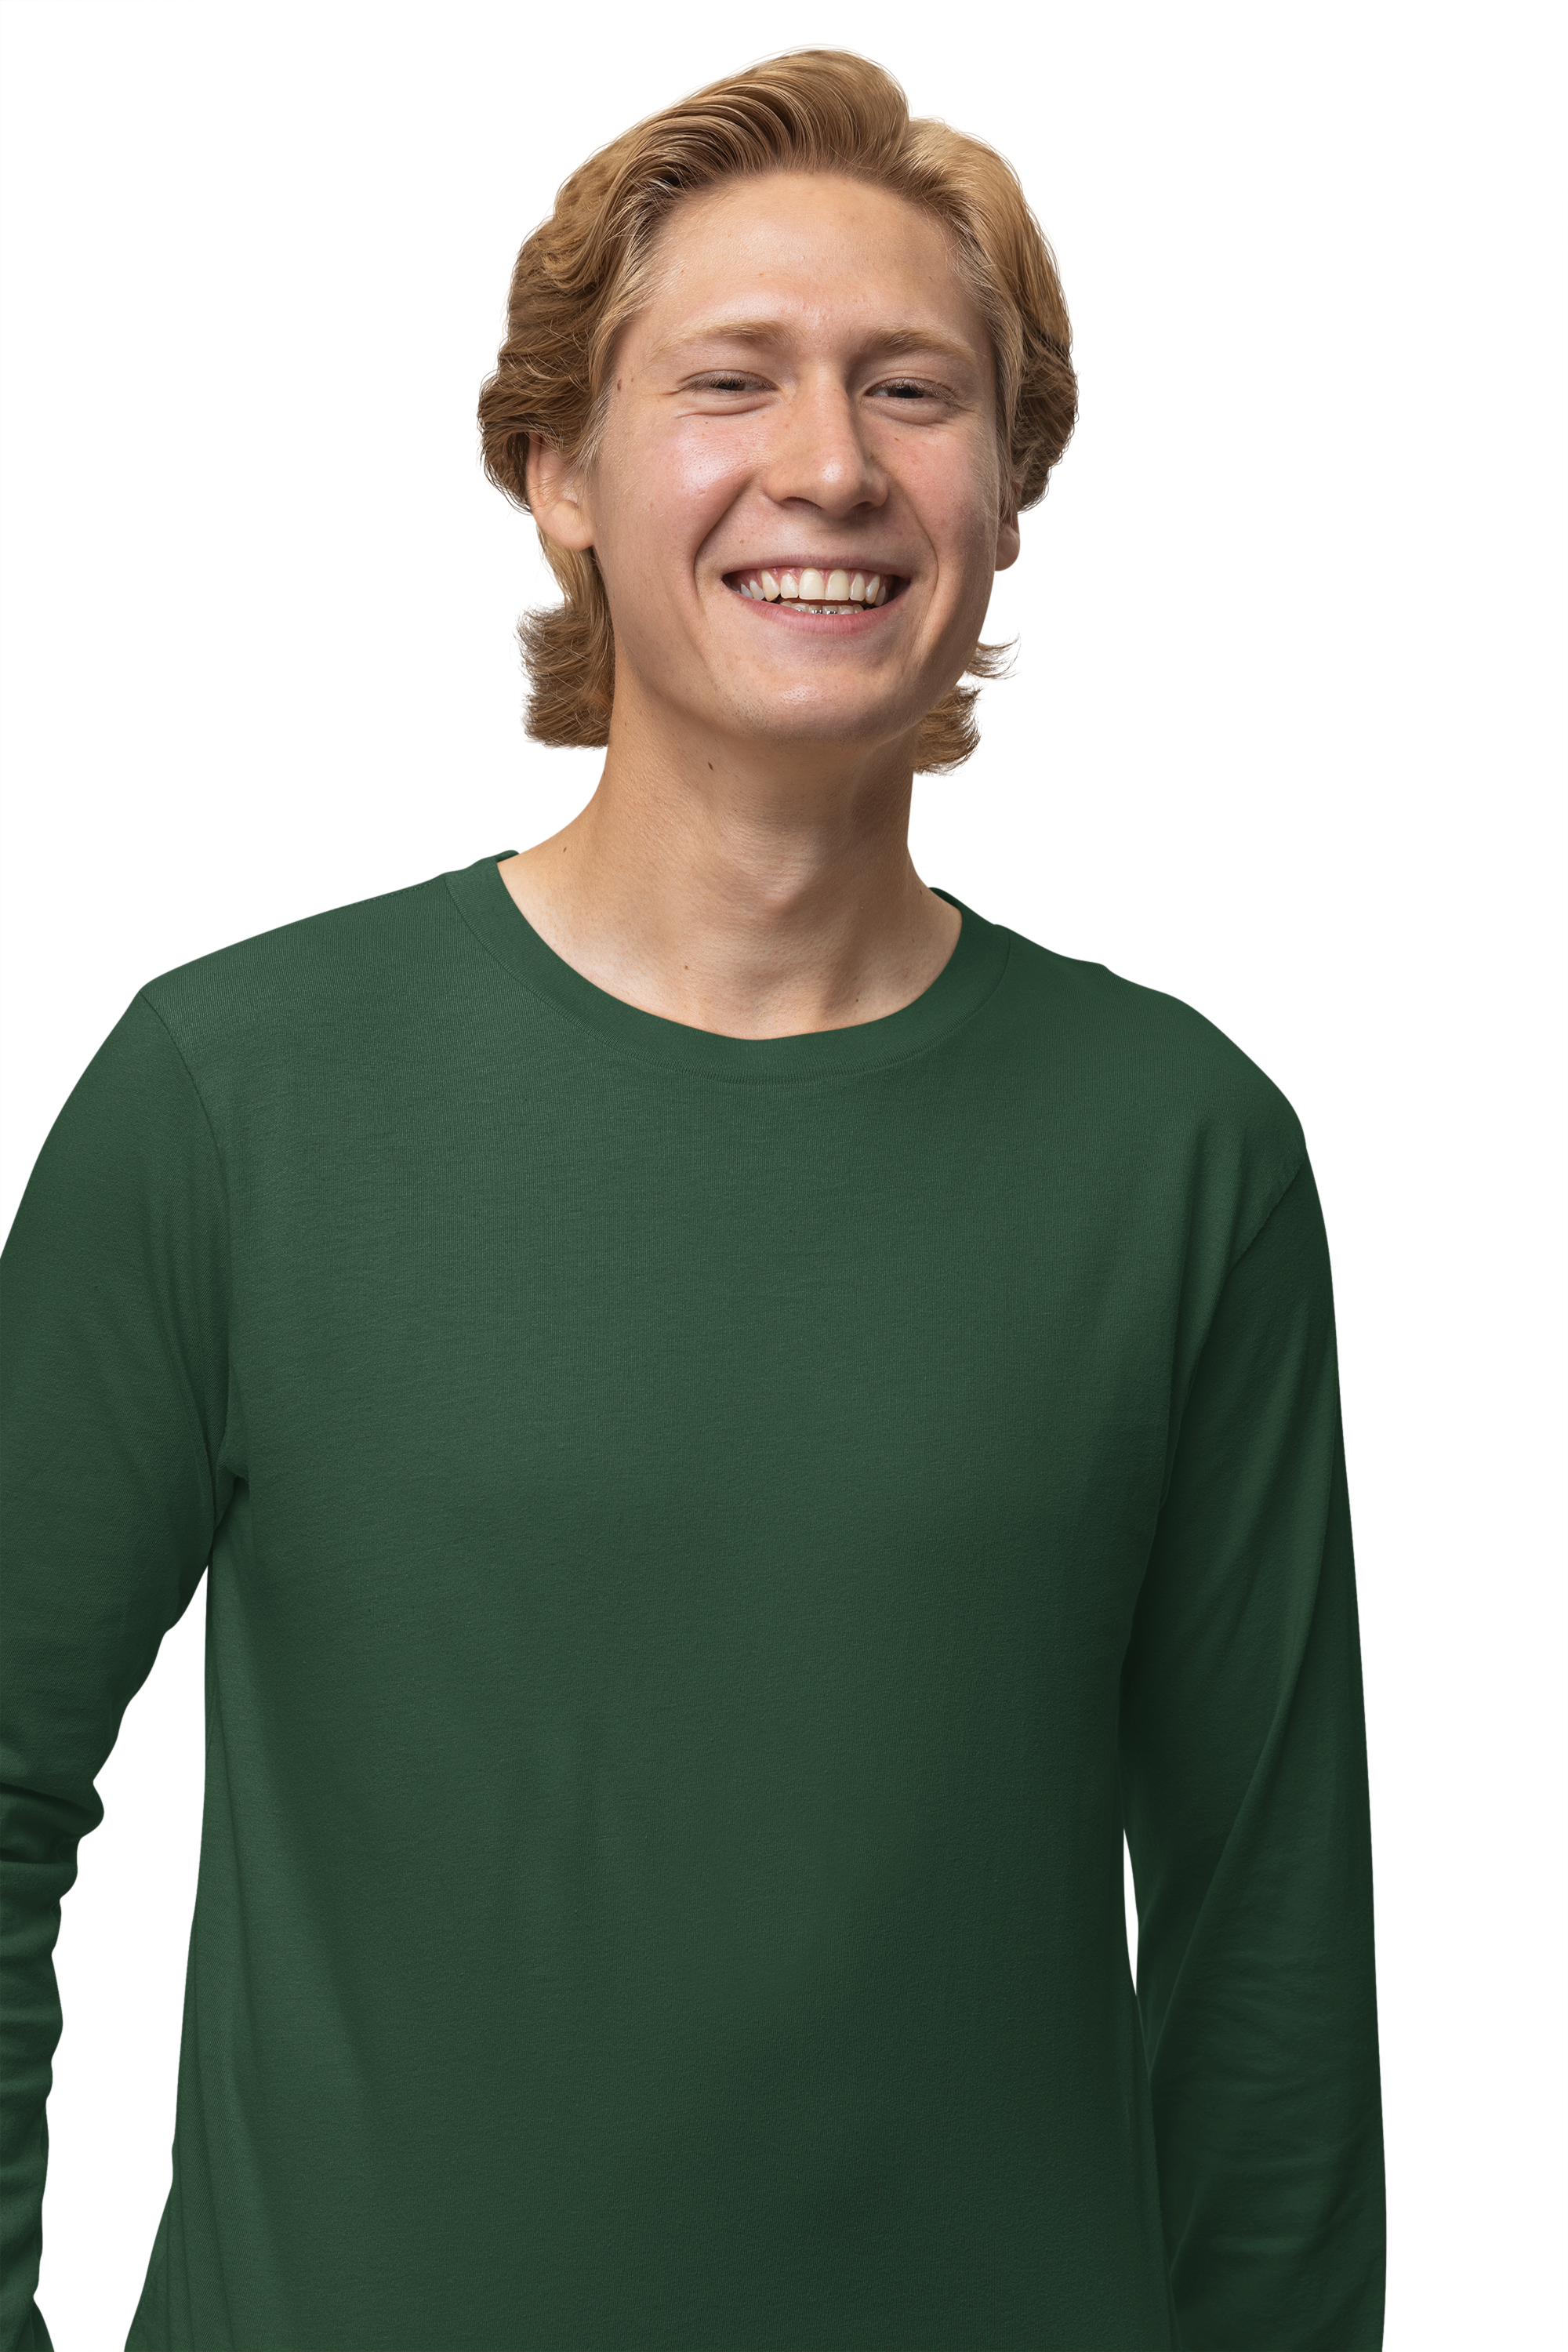 Men's Olive Green Full Sleeve T-shirt